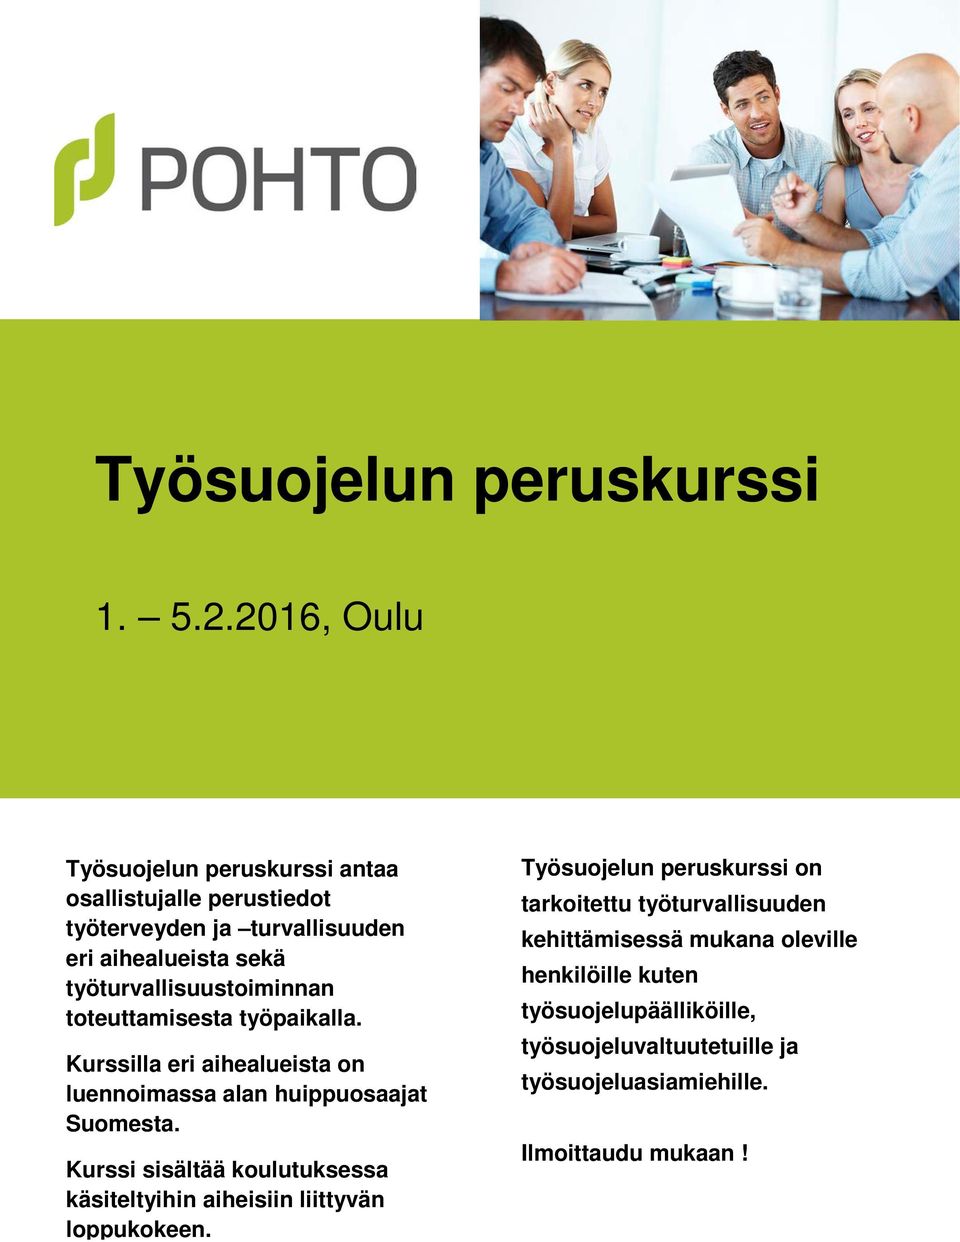 työturvallisuustoiminnan toteuttamisesta työpaikalla. Kurssilla eri aihealueista on luennoimassa alan huippuosaajat Suomesta.